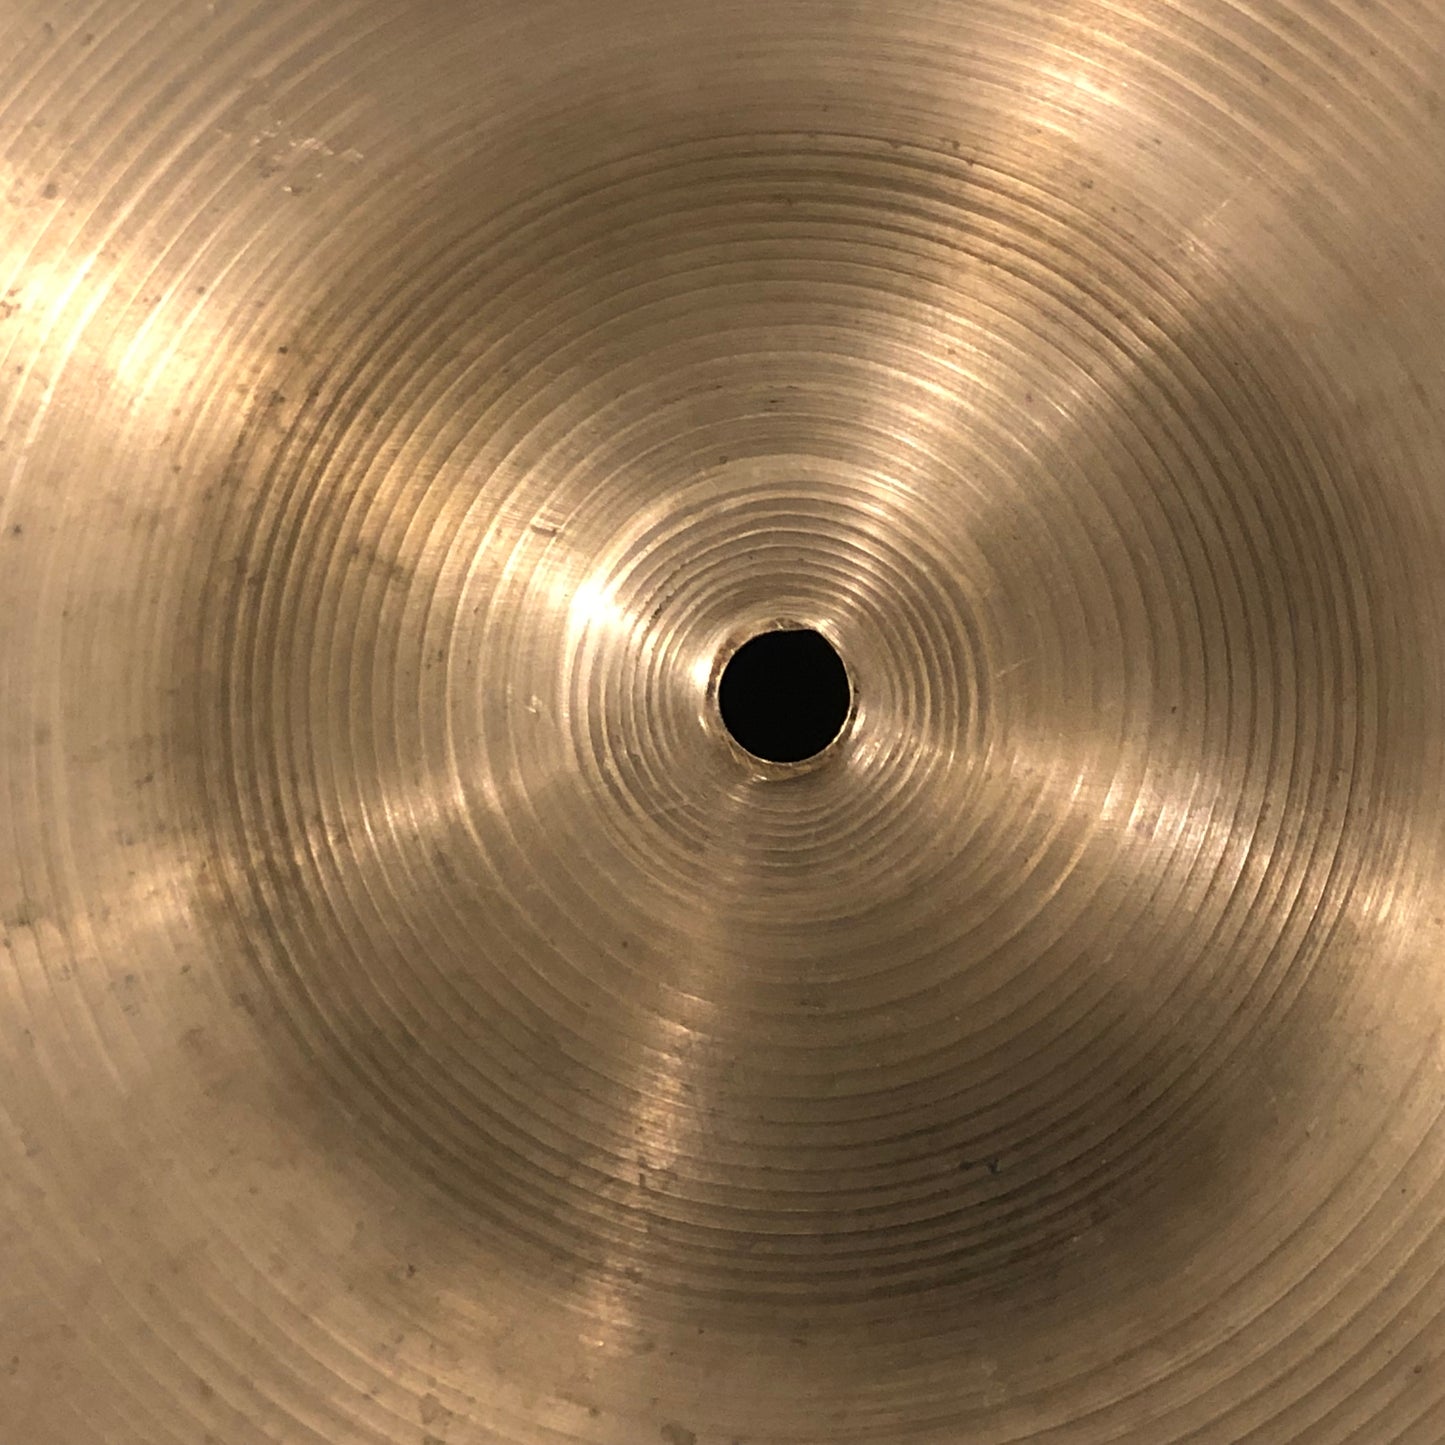 22" Zildjian A 1960s Ride Cymbal 2714g #745 *Video Demo*